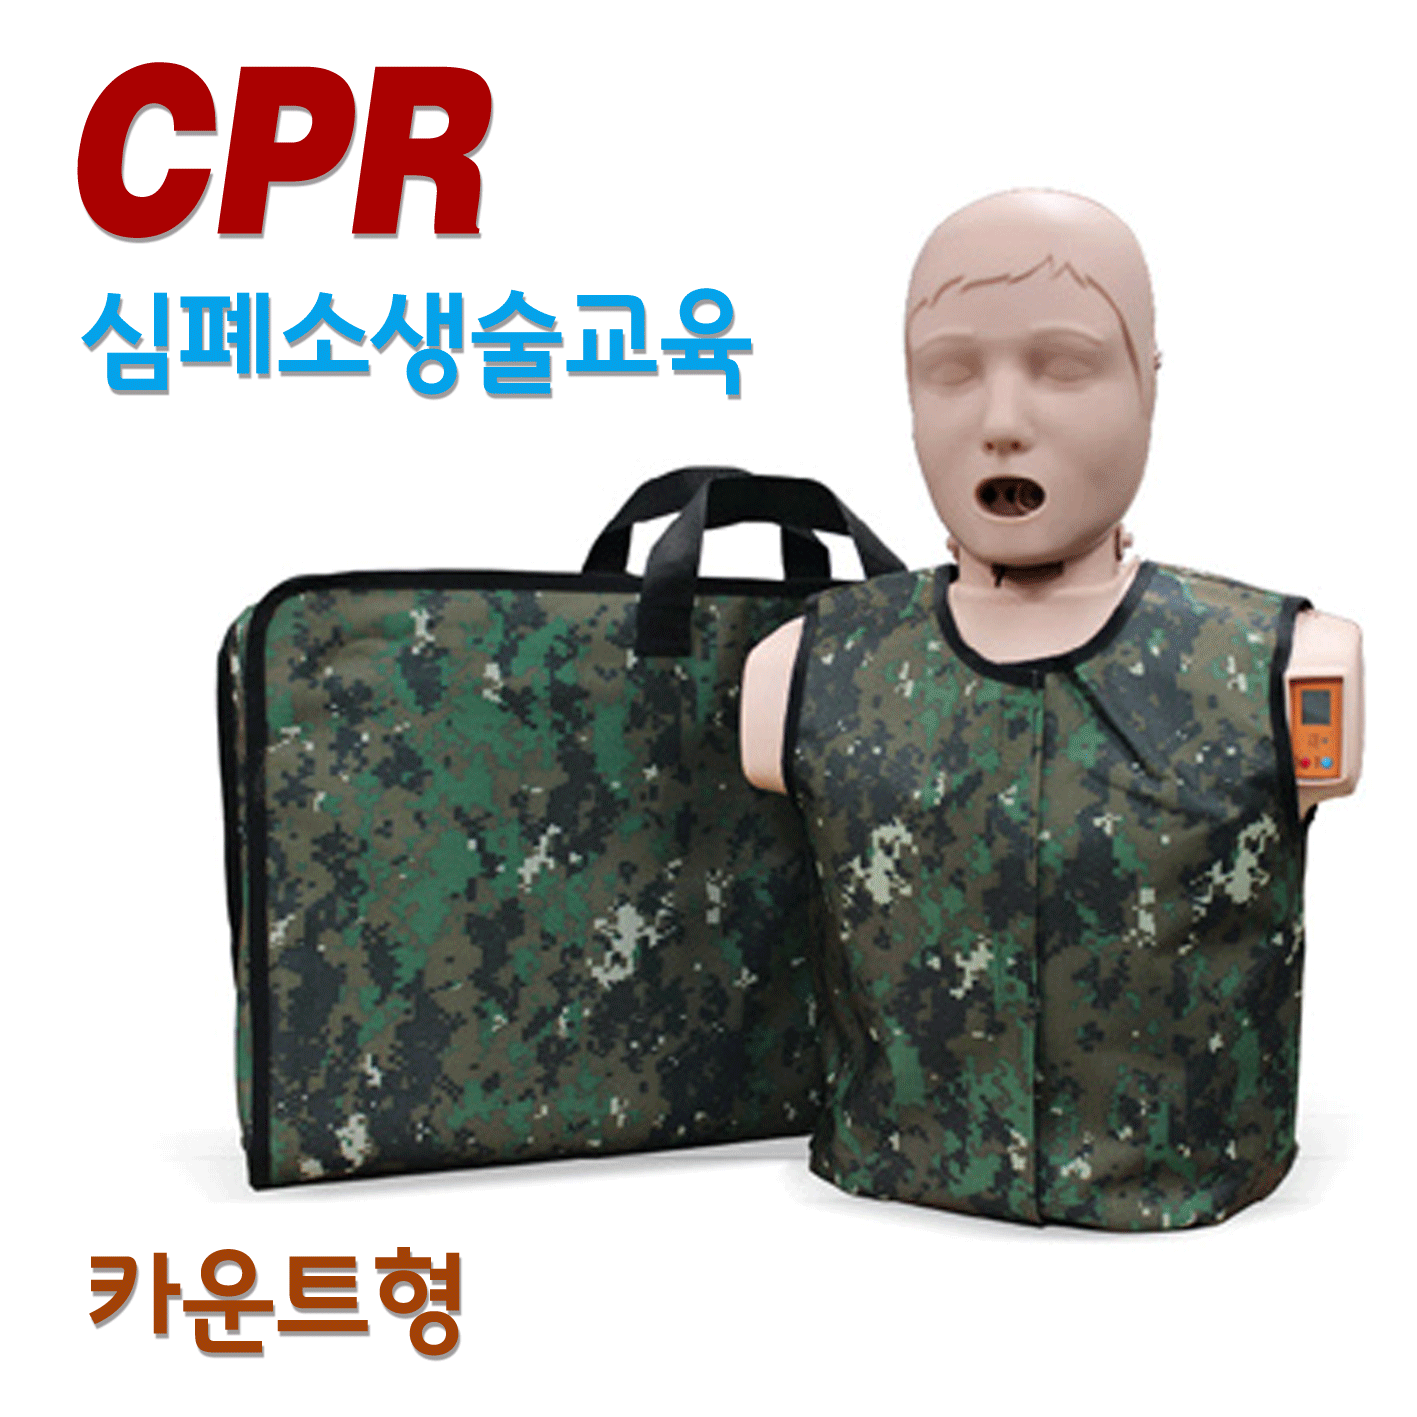 써니 - 카운트형 (현역 군인 및 예비군 전용 마네킹) [한국형 심폐소생술 모형]